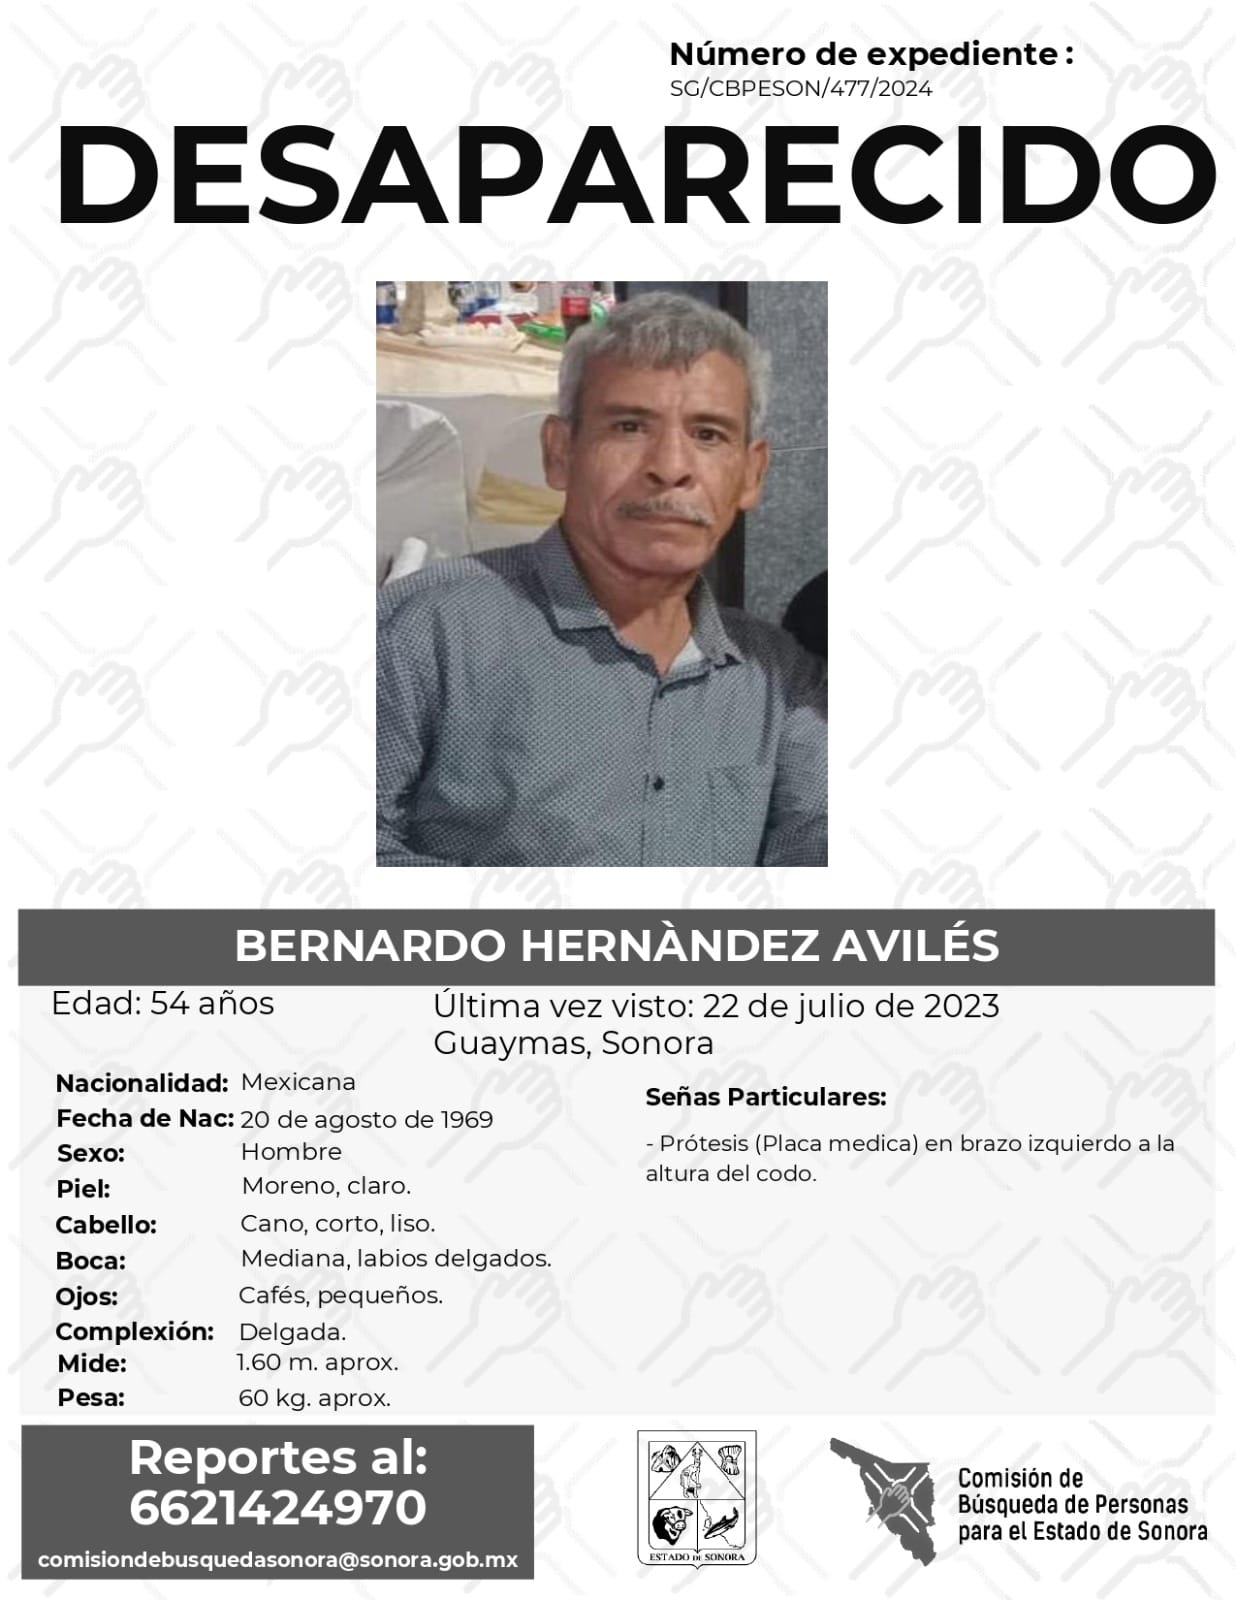 BERNARDO HERNÁNDEZ AVILÉS - DESAPARECIDO